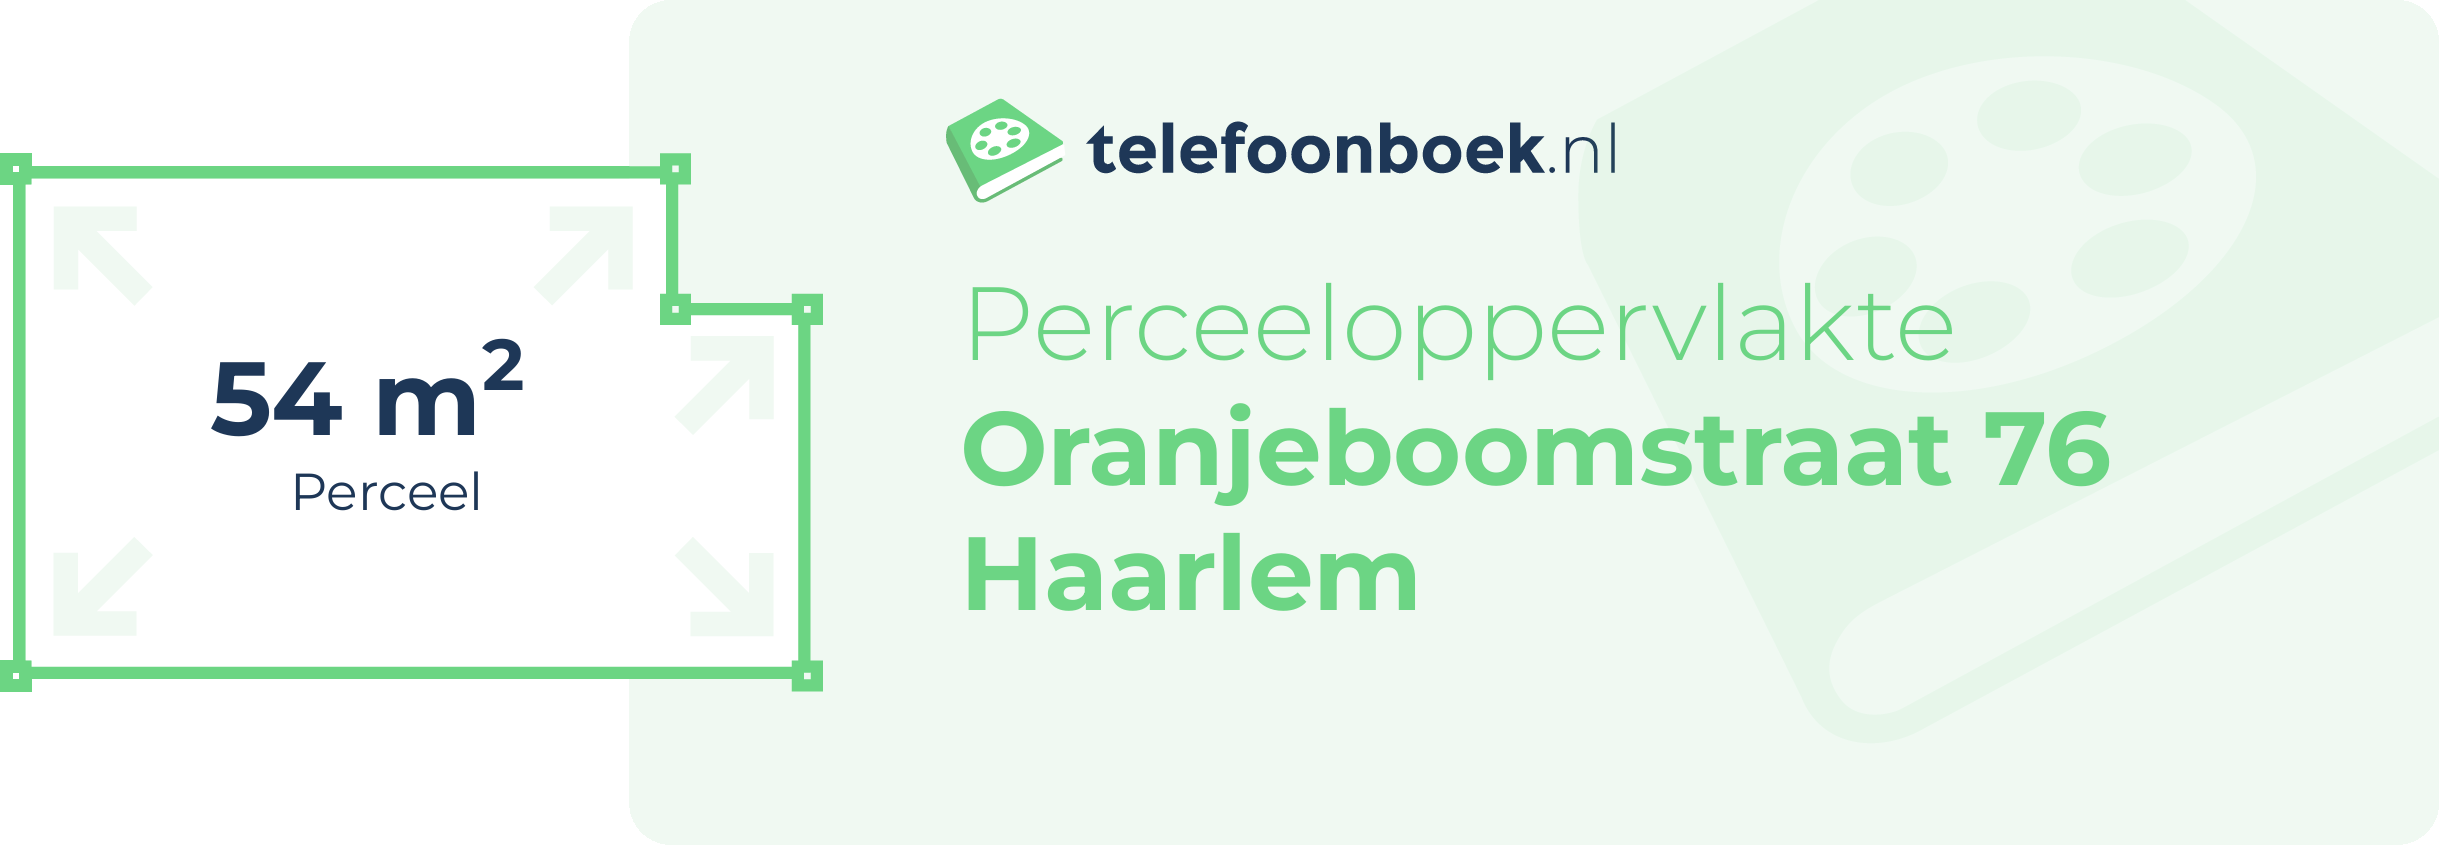 Perceeloppervlakte Oranjeboomstraat 76 Haarlem